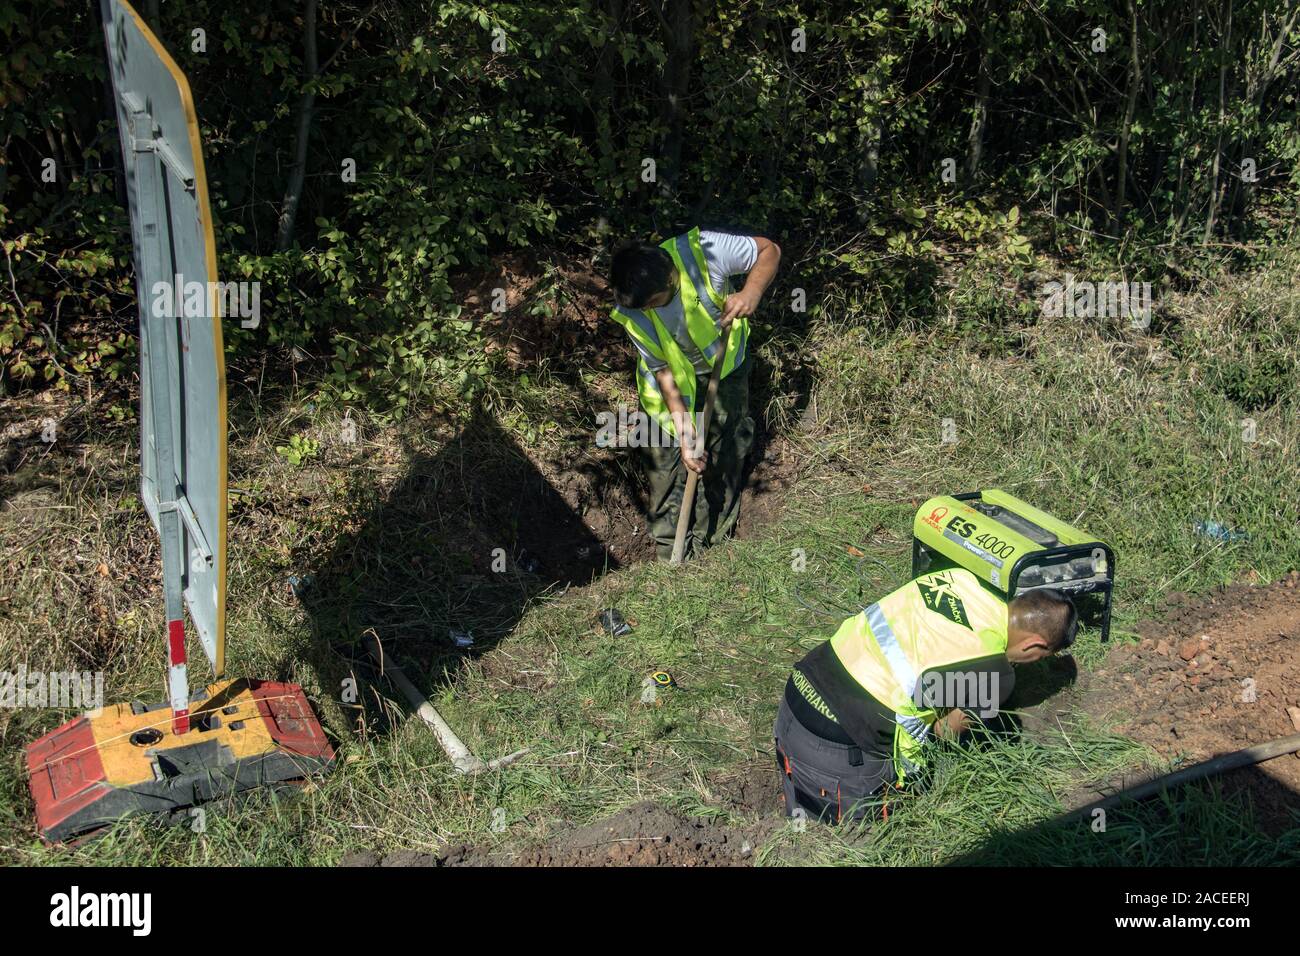 Chequia Central, República Checa, 04 SEP 2019, Equipo de trabajadores con chaleco reflectante cavando hoyos al lado de una carretera. Trabajos manuales pesados sobre piscina c Foto de stock